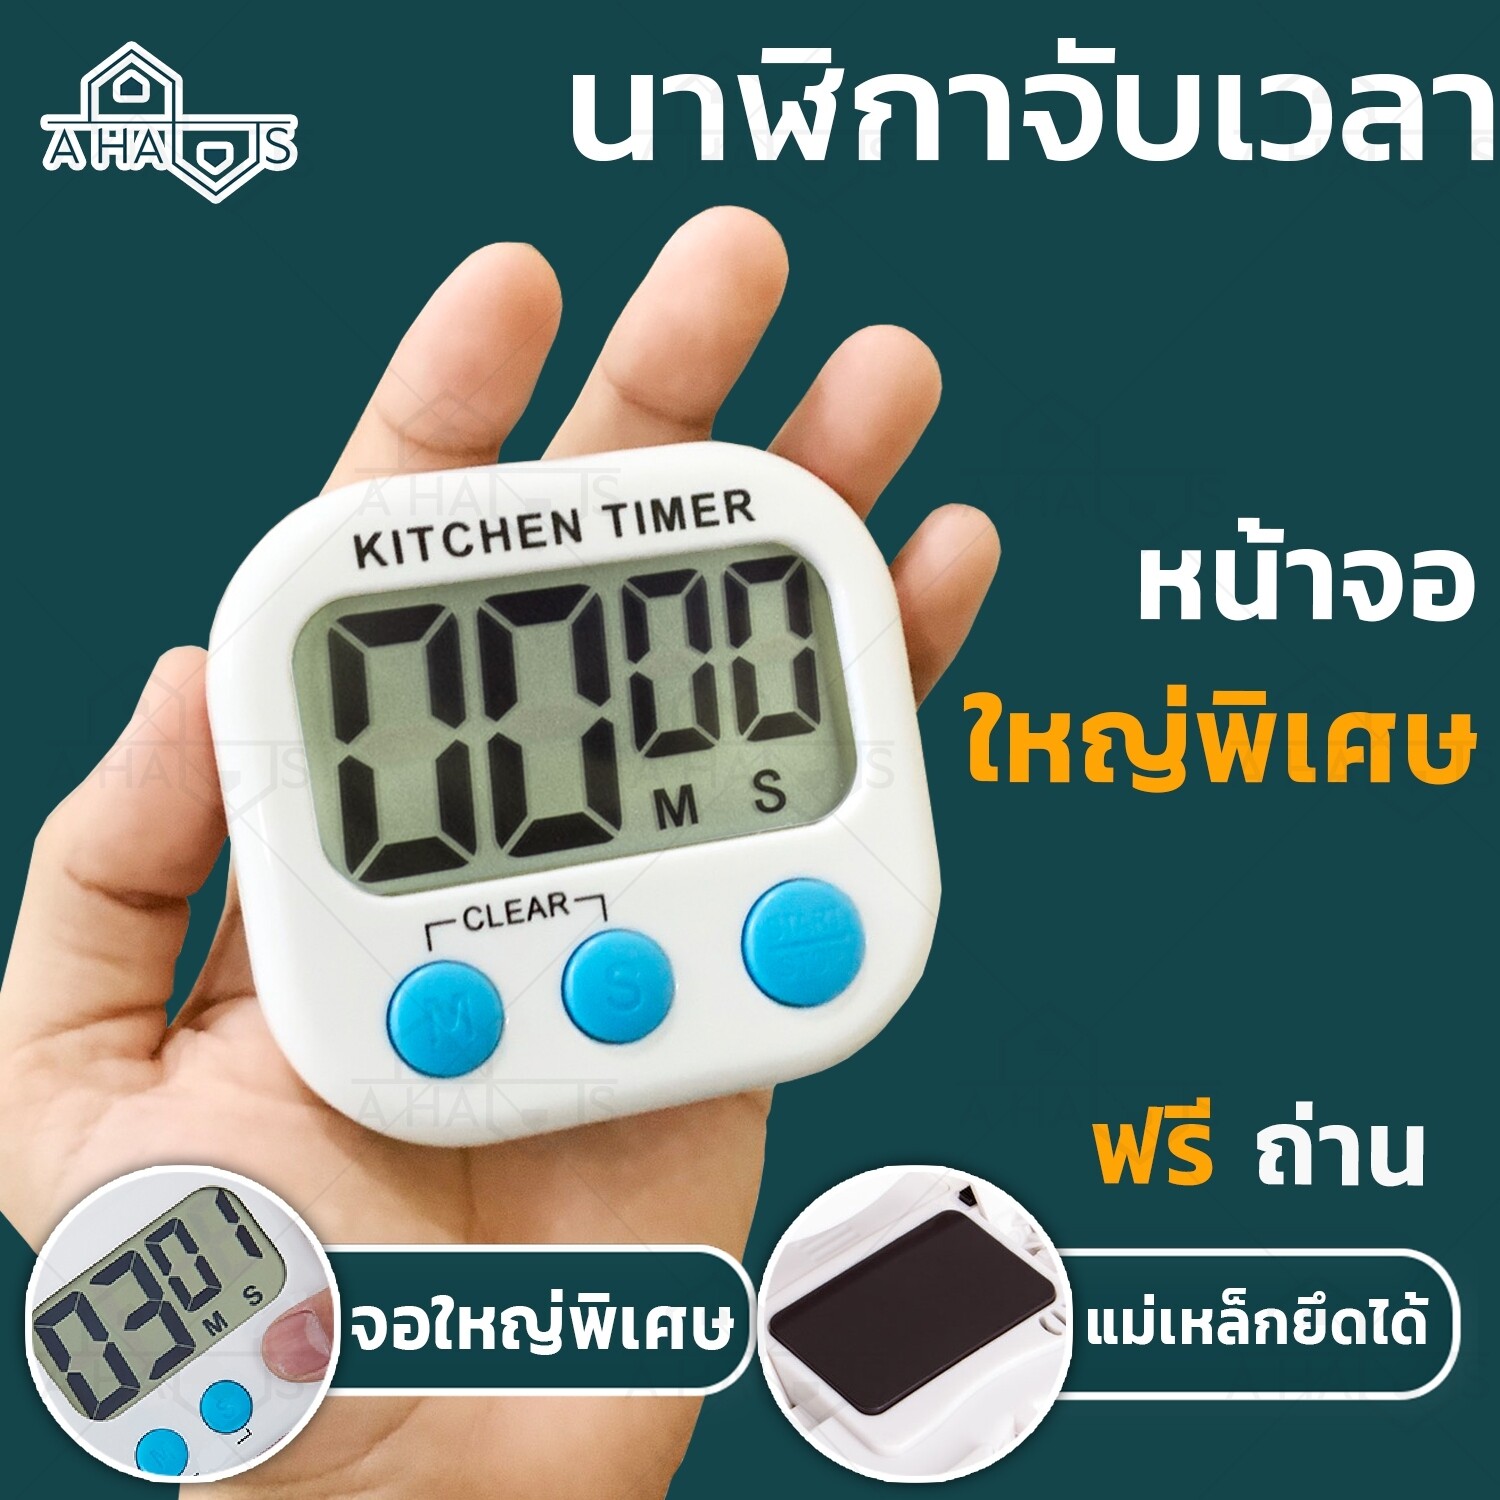 A HAUS นาฬิกาจับเวลา นาฬิกาตั้งเวลาทำอาหาร นาฬิกาจับเวลาในครัว ขนาด 8 x 7 ซม. นาฬิกาจับเวลาทำอาหาร นาฬิกจับเวลาเดินหน้าถอยหลัง 1 ชิ้น